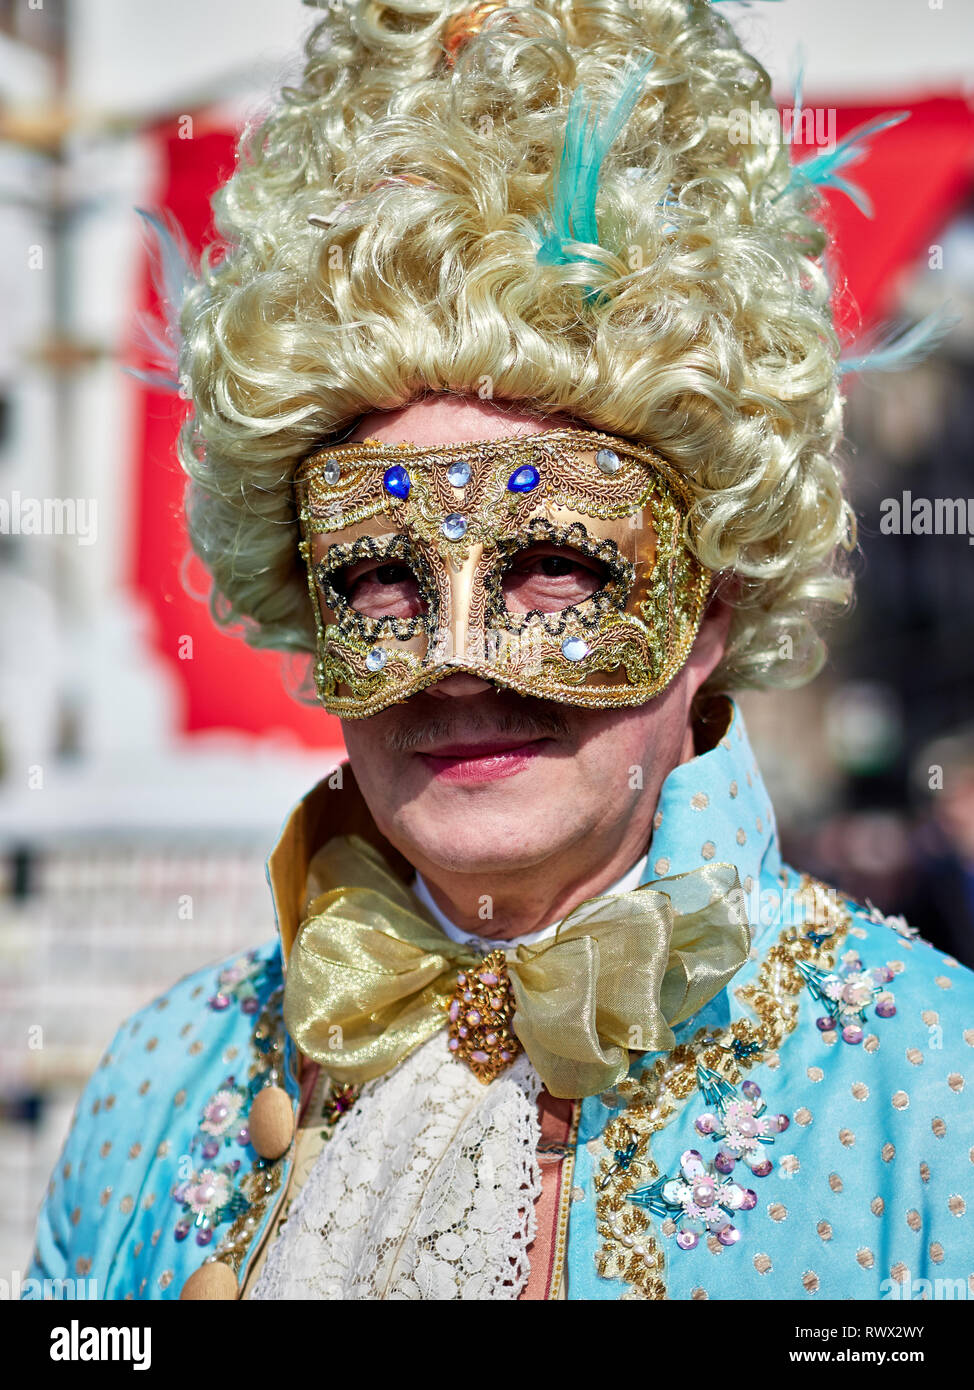 Venise, Italie - 2 mars 2019 Portrait d'une personne habillée d'un costume  vénitien dans un marché pour acheter et louer des costumes pendant le  Carnaval de Venise Photo Stock - Alamy